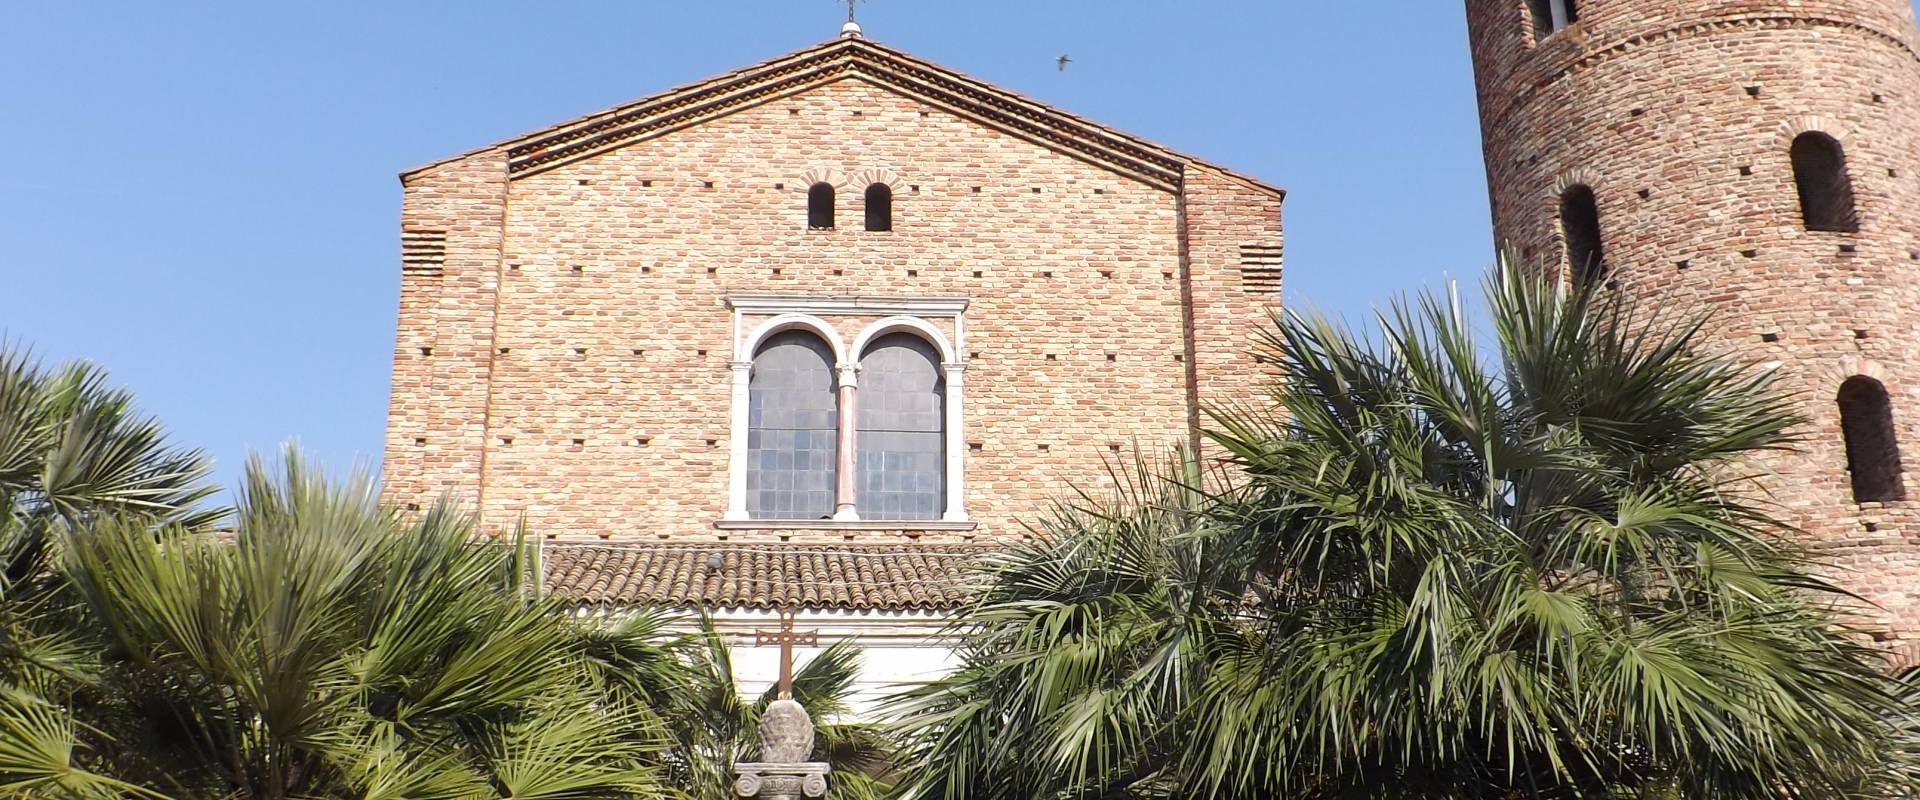 Basilica di Sant'Apollinare Nuovo - esterno photo by Cristina Cumbo